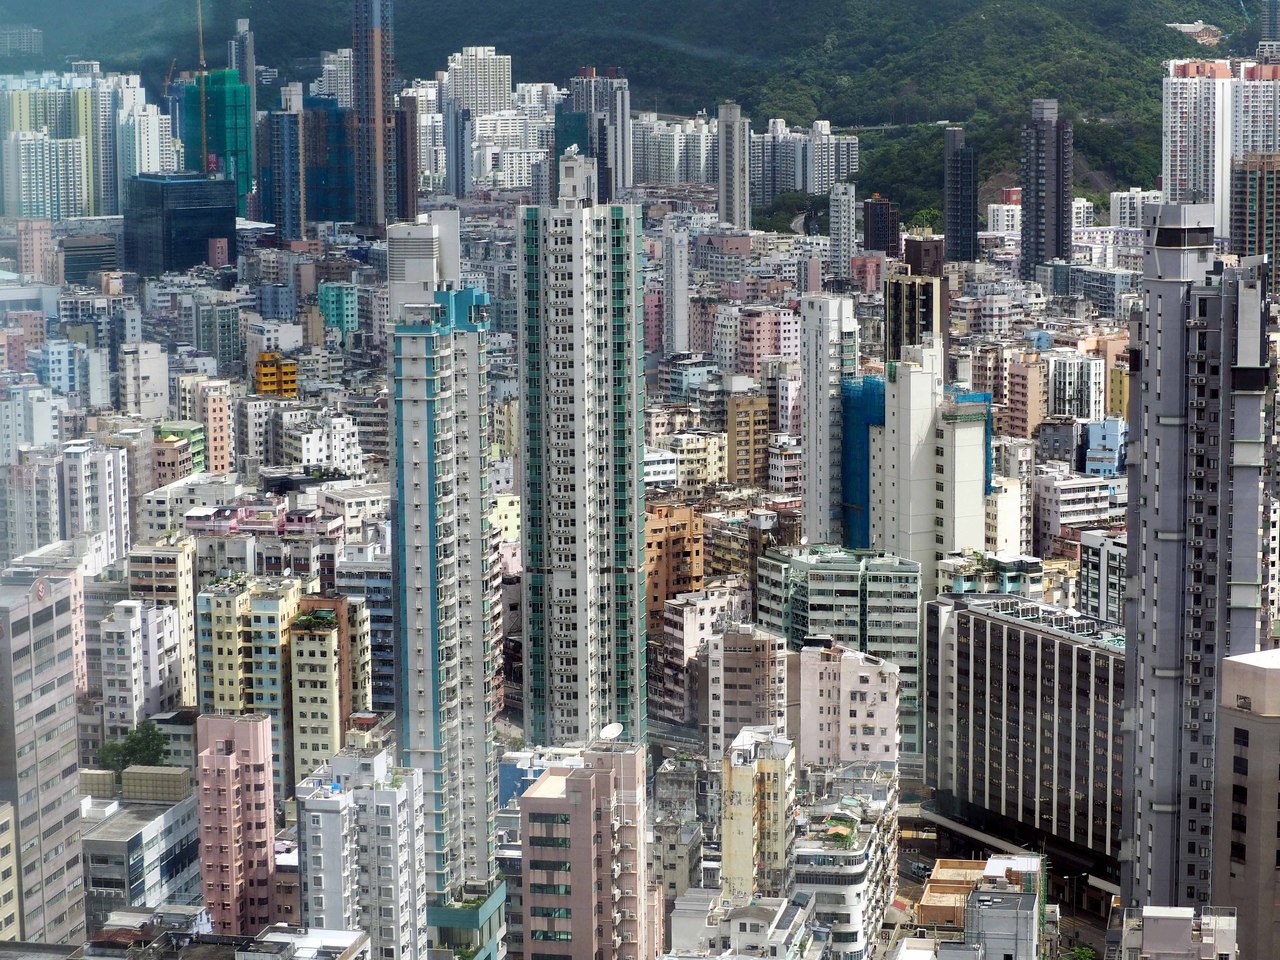 香港正在北部都会区范围内兴建「港深创科园」，作为科技创新企业入驻的园区。图为九龙区。中通社